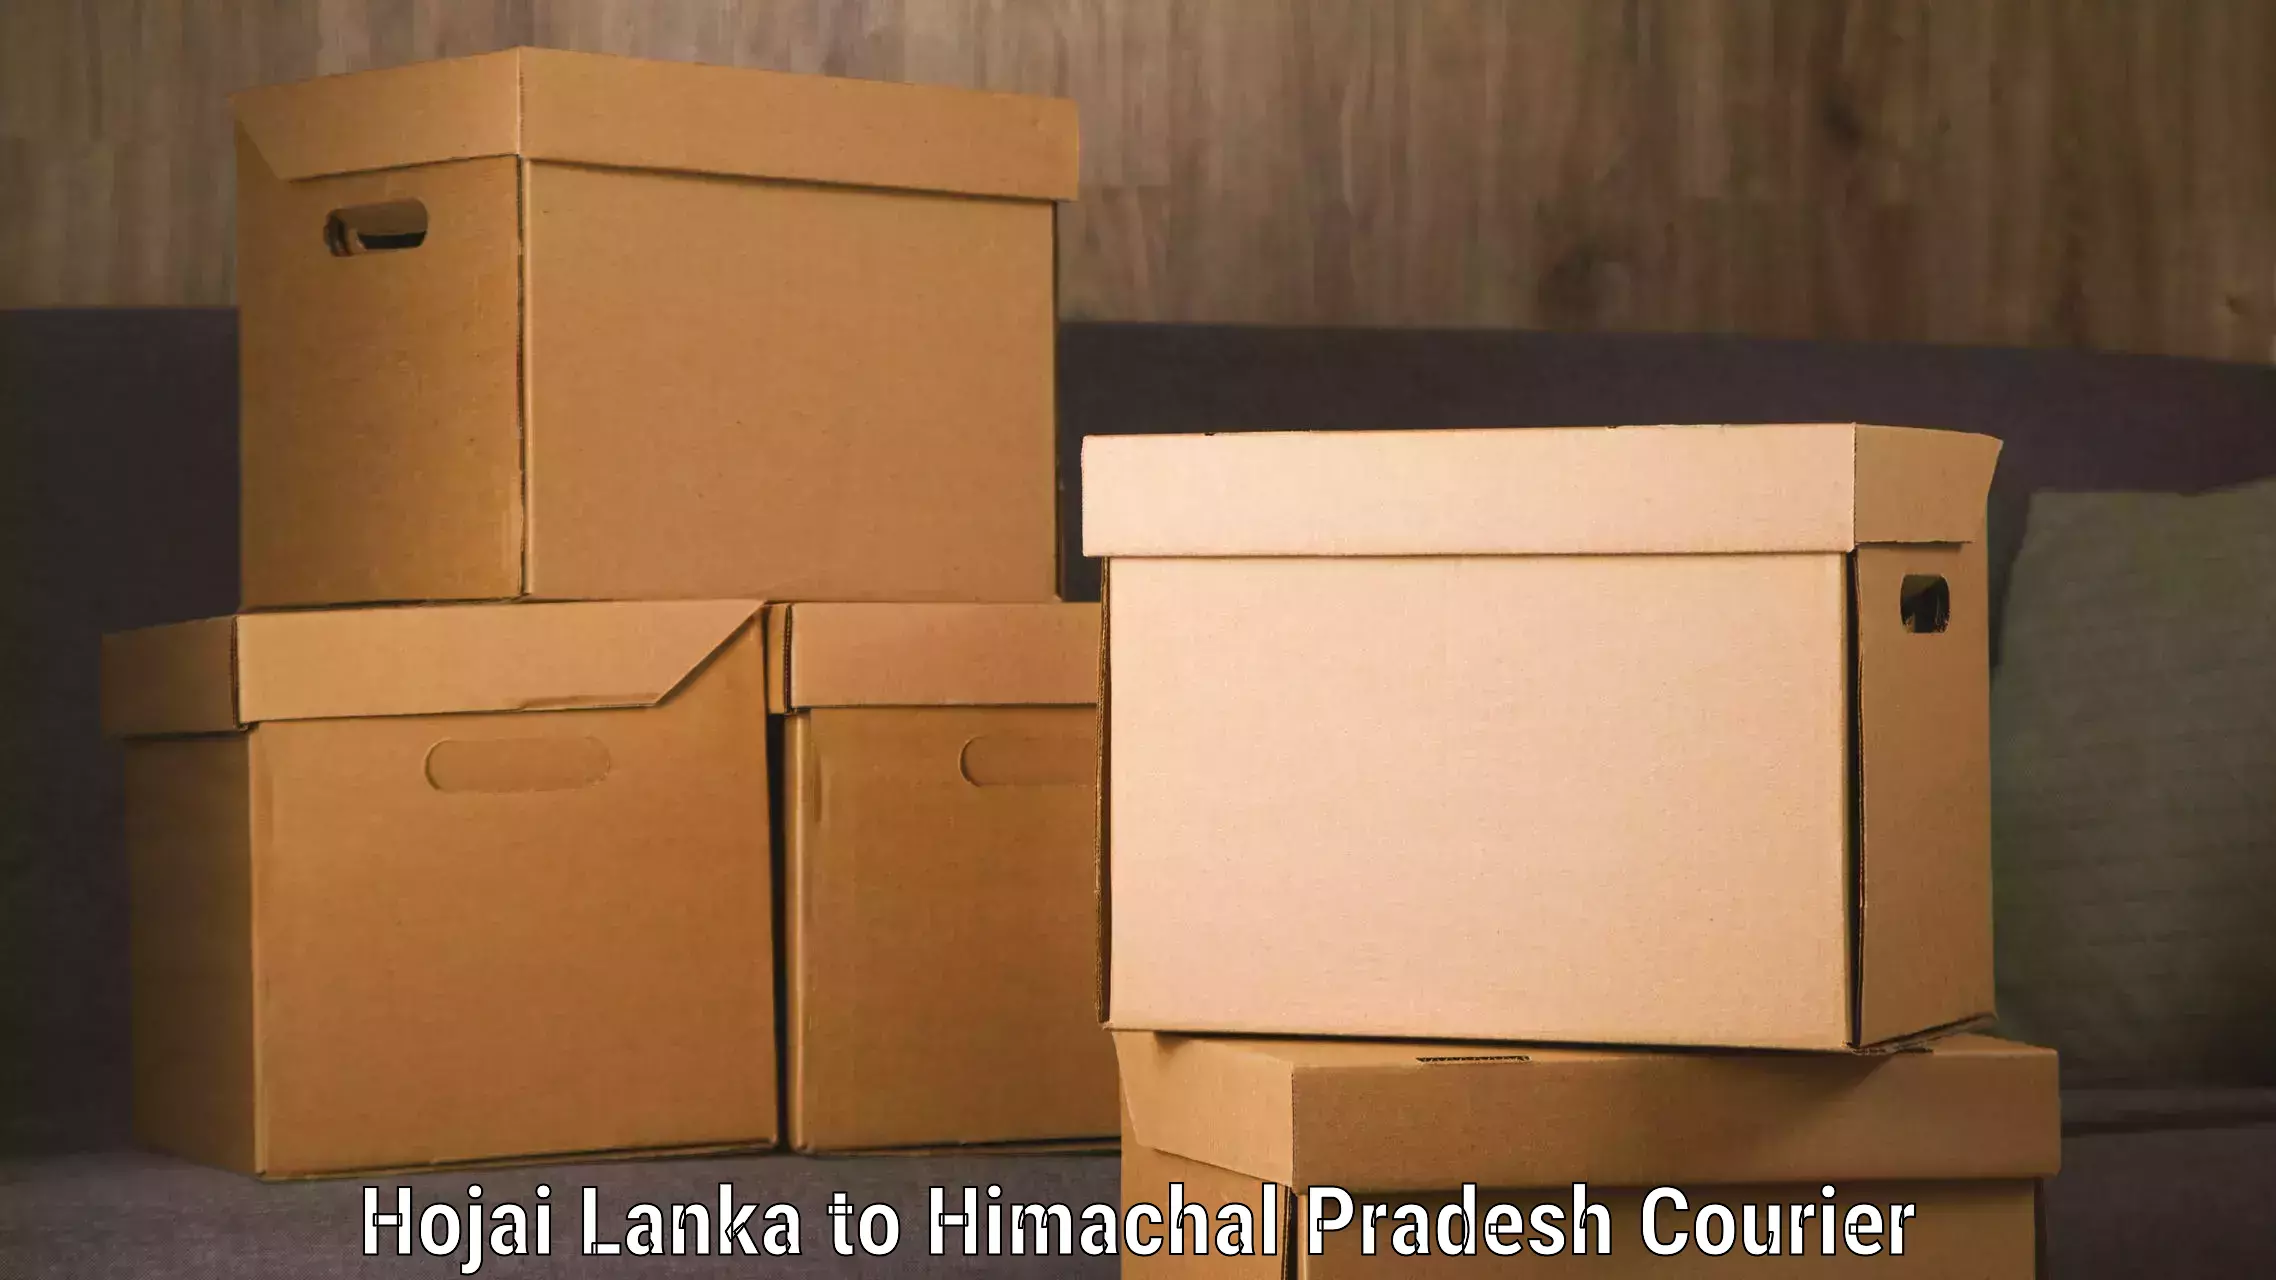 Luggage transit service Hojai Lanka to Sundla